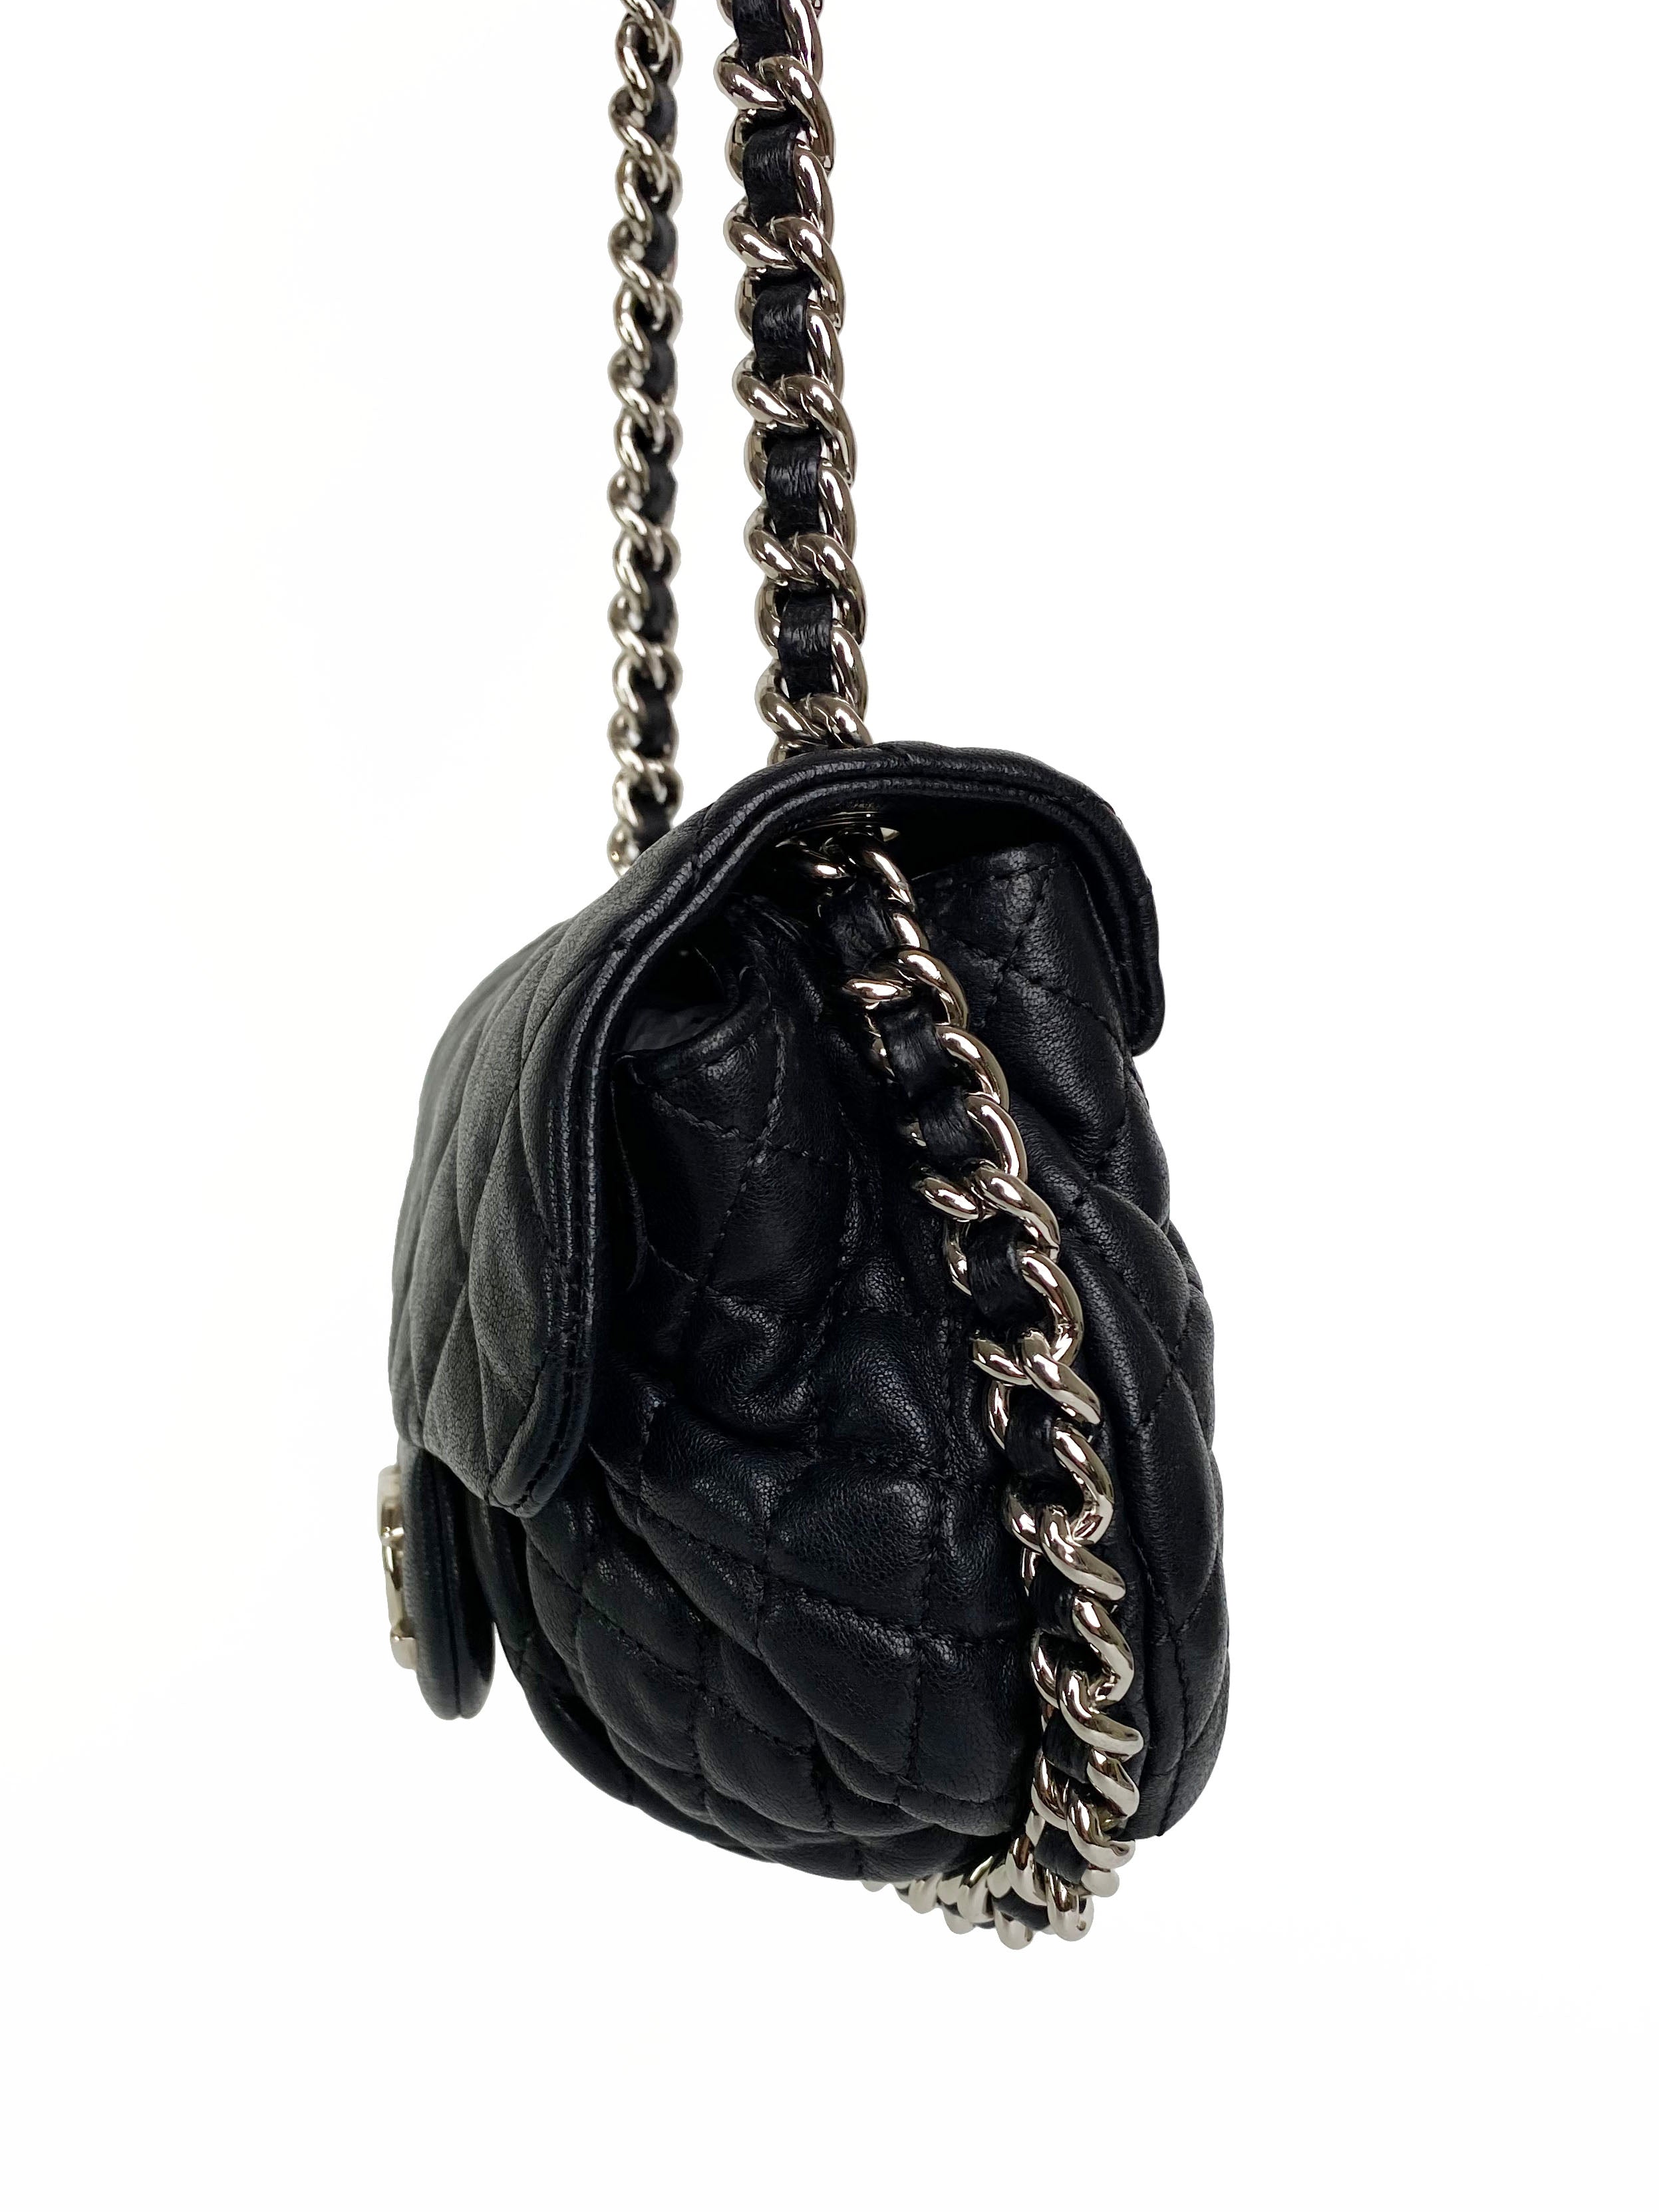 Chanel Vintage Black Chain Around Bag